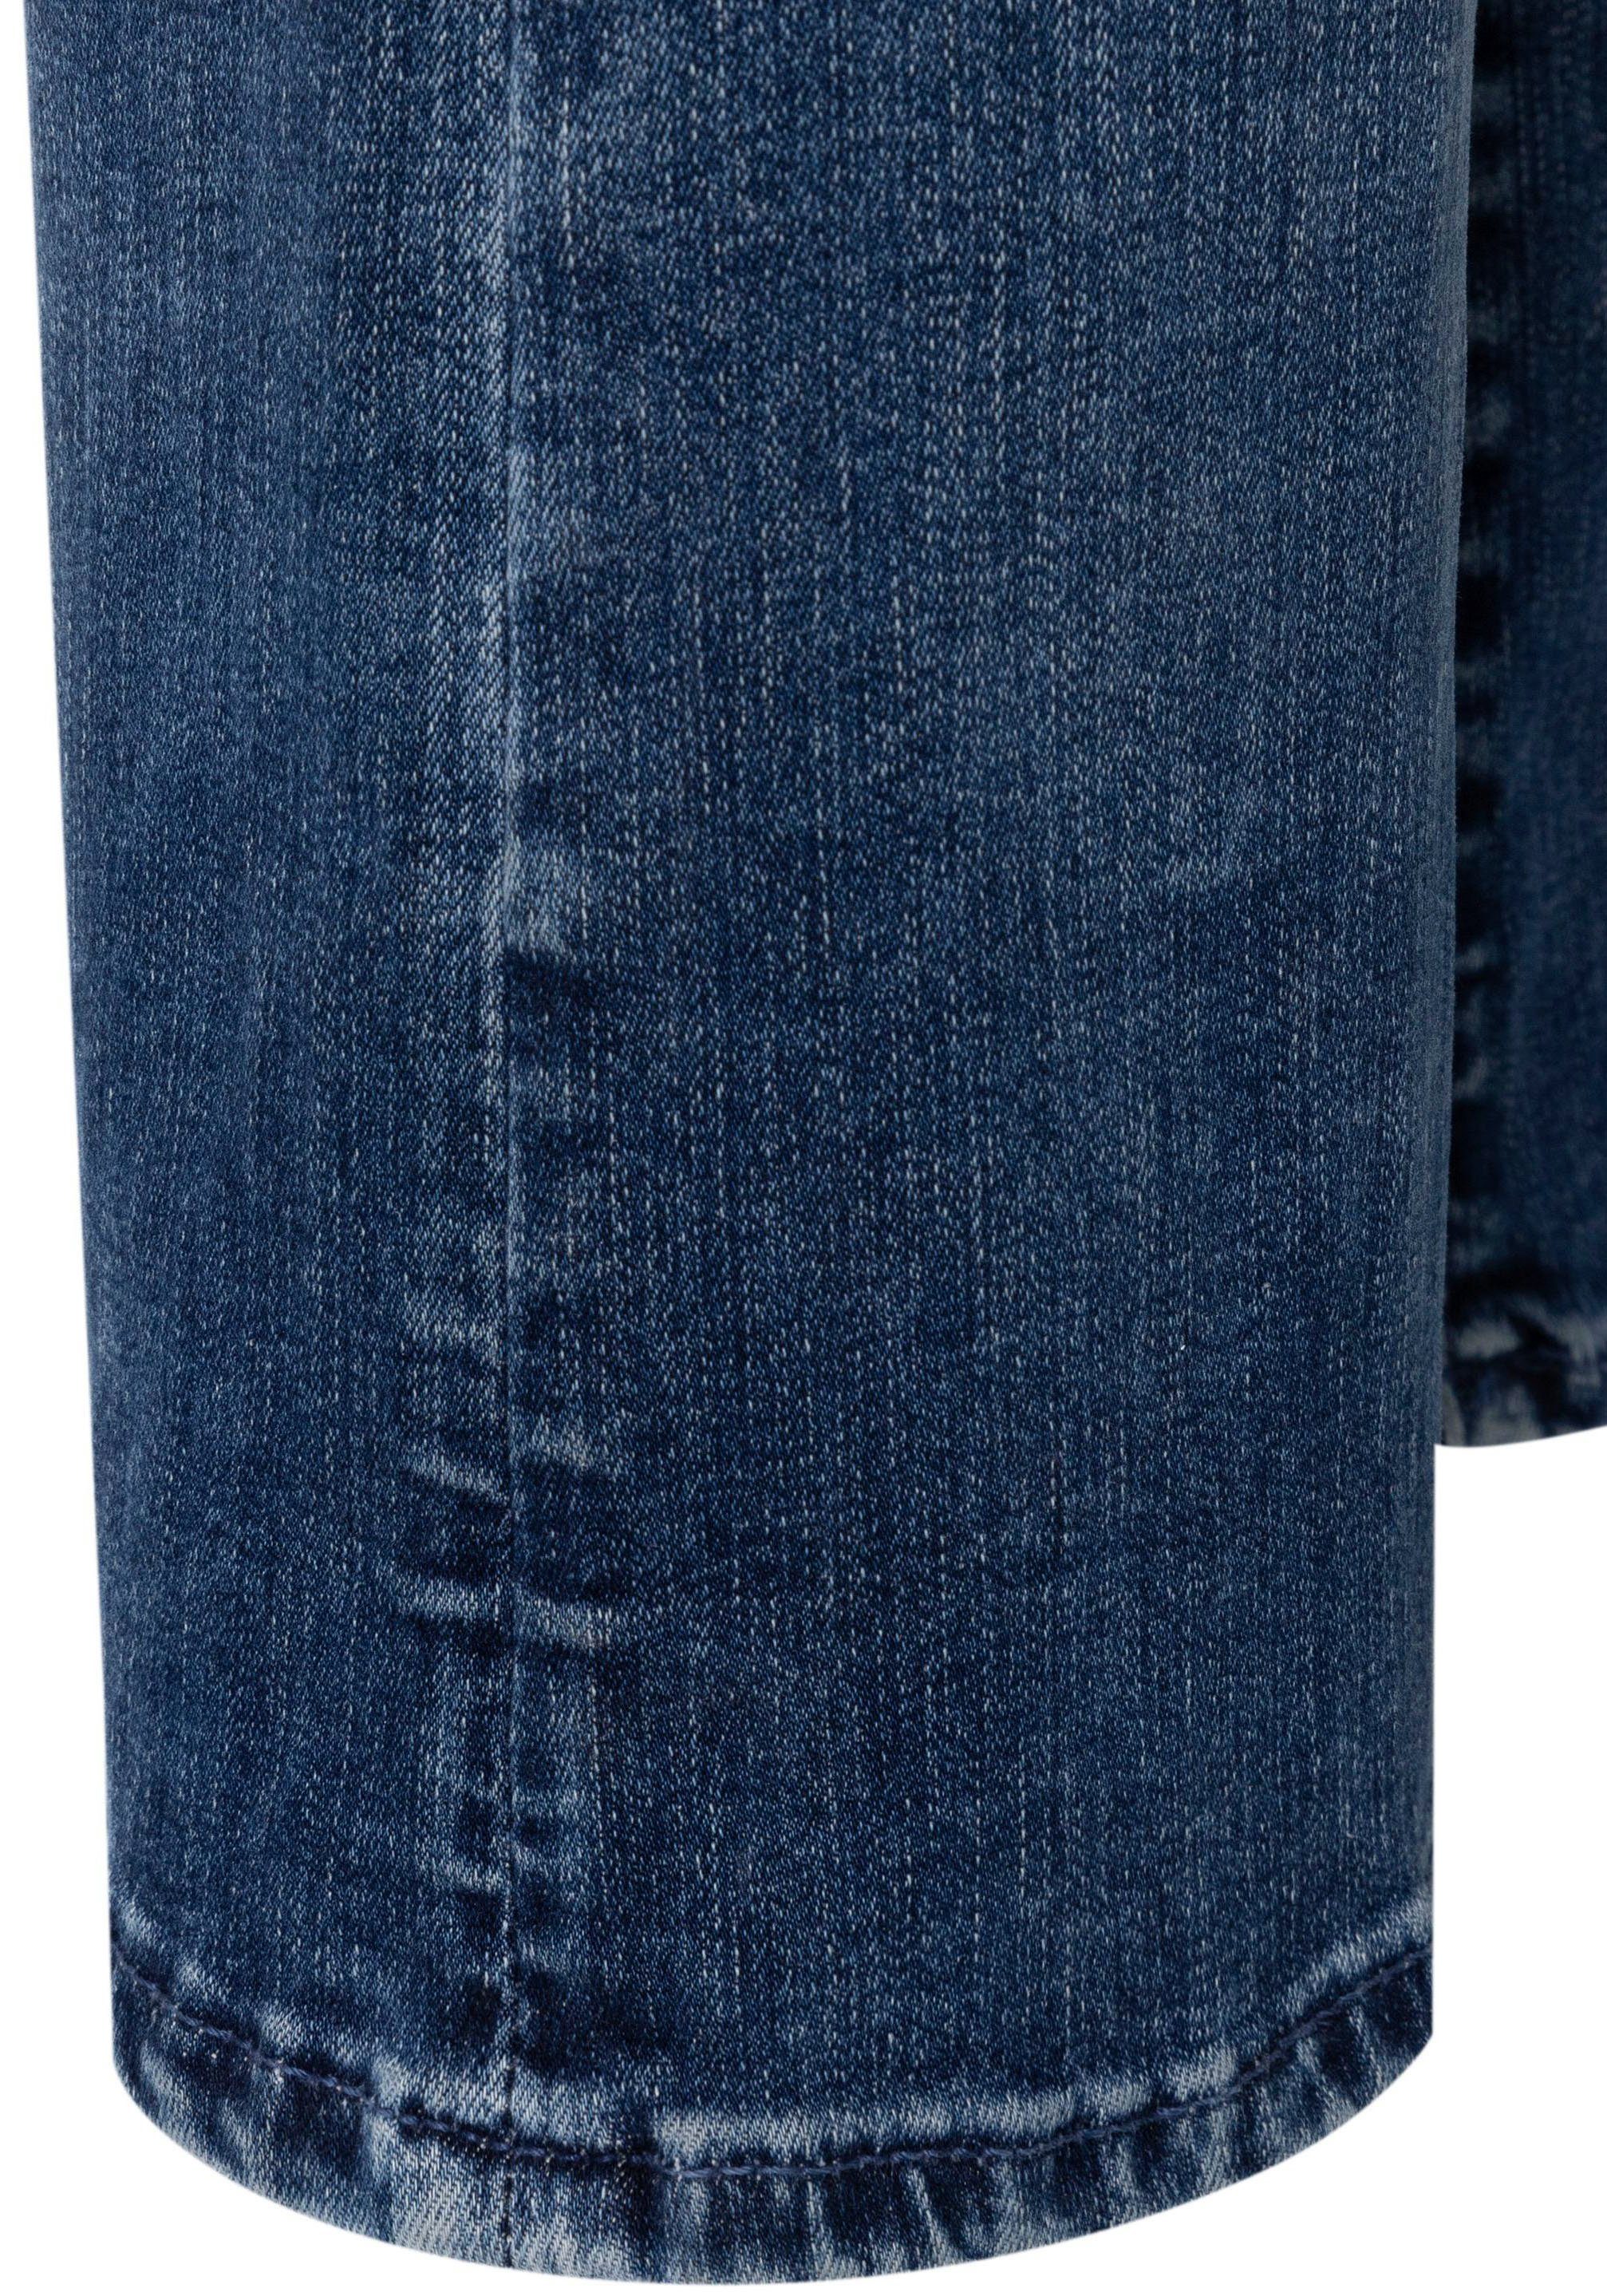 modisch verkürzt 3/4-Jeans Dream und ausgestellt Saum washed dark MAC Kick blue leicht